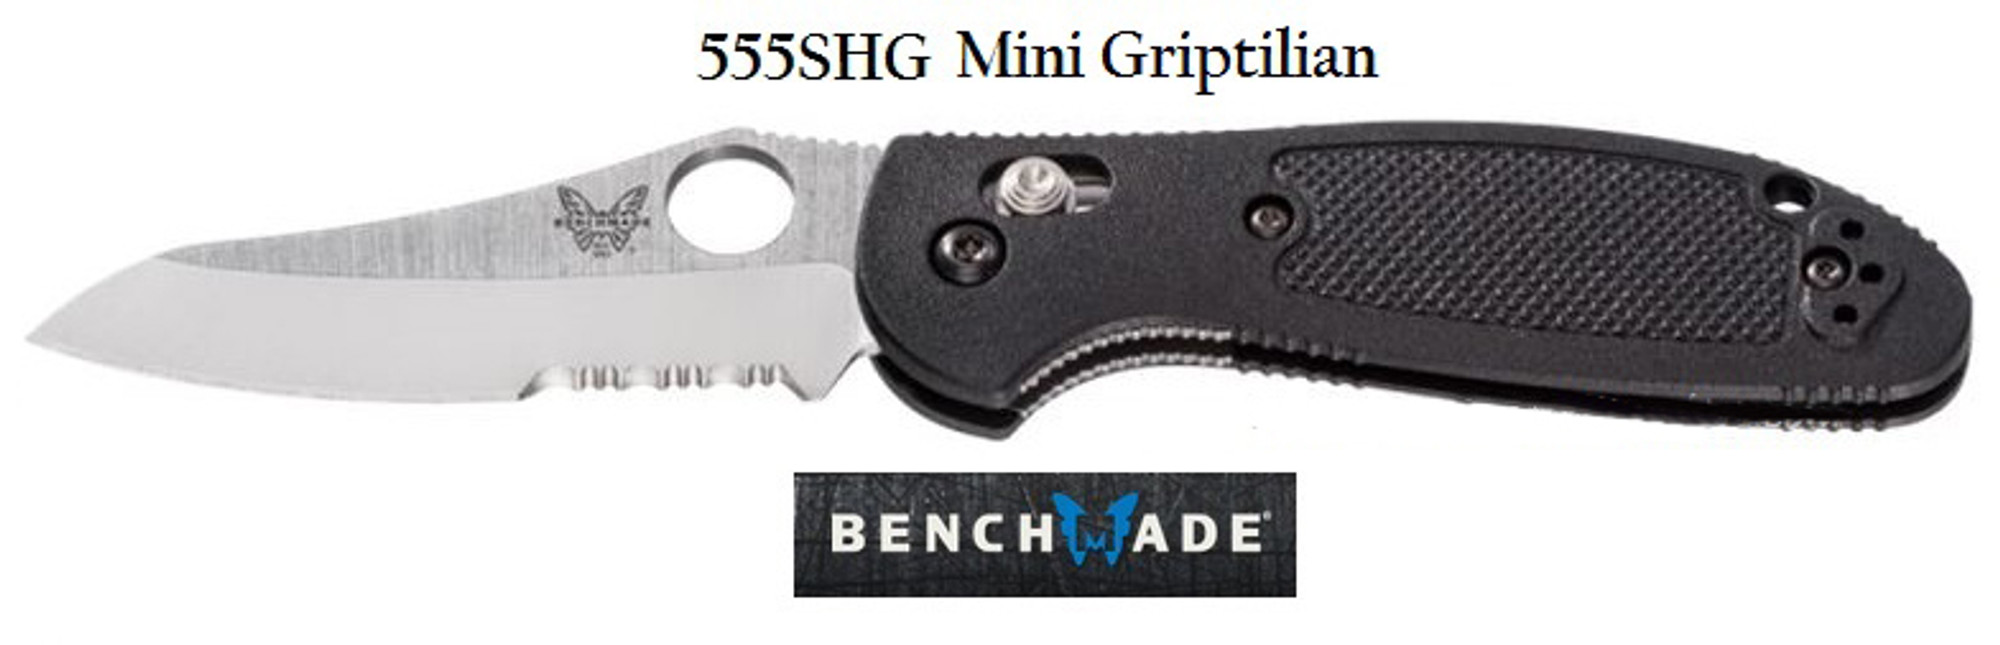 Benchmade 555SHG Griptilian Mini ComboEdge